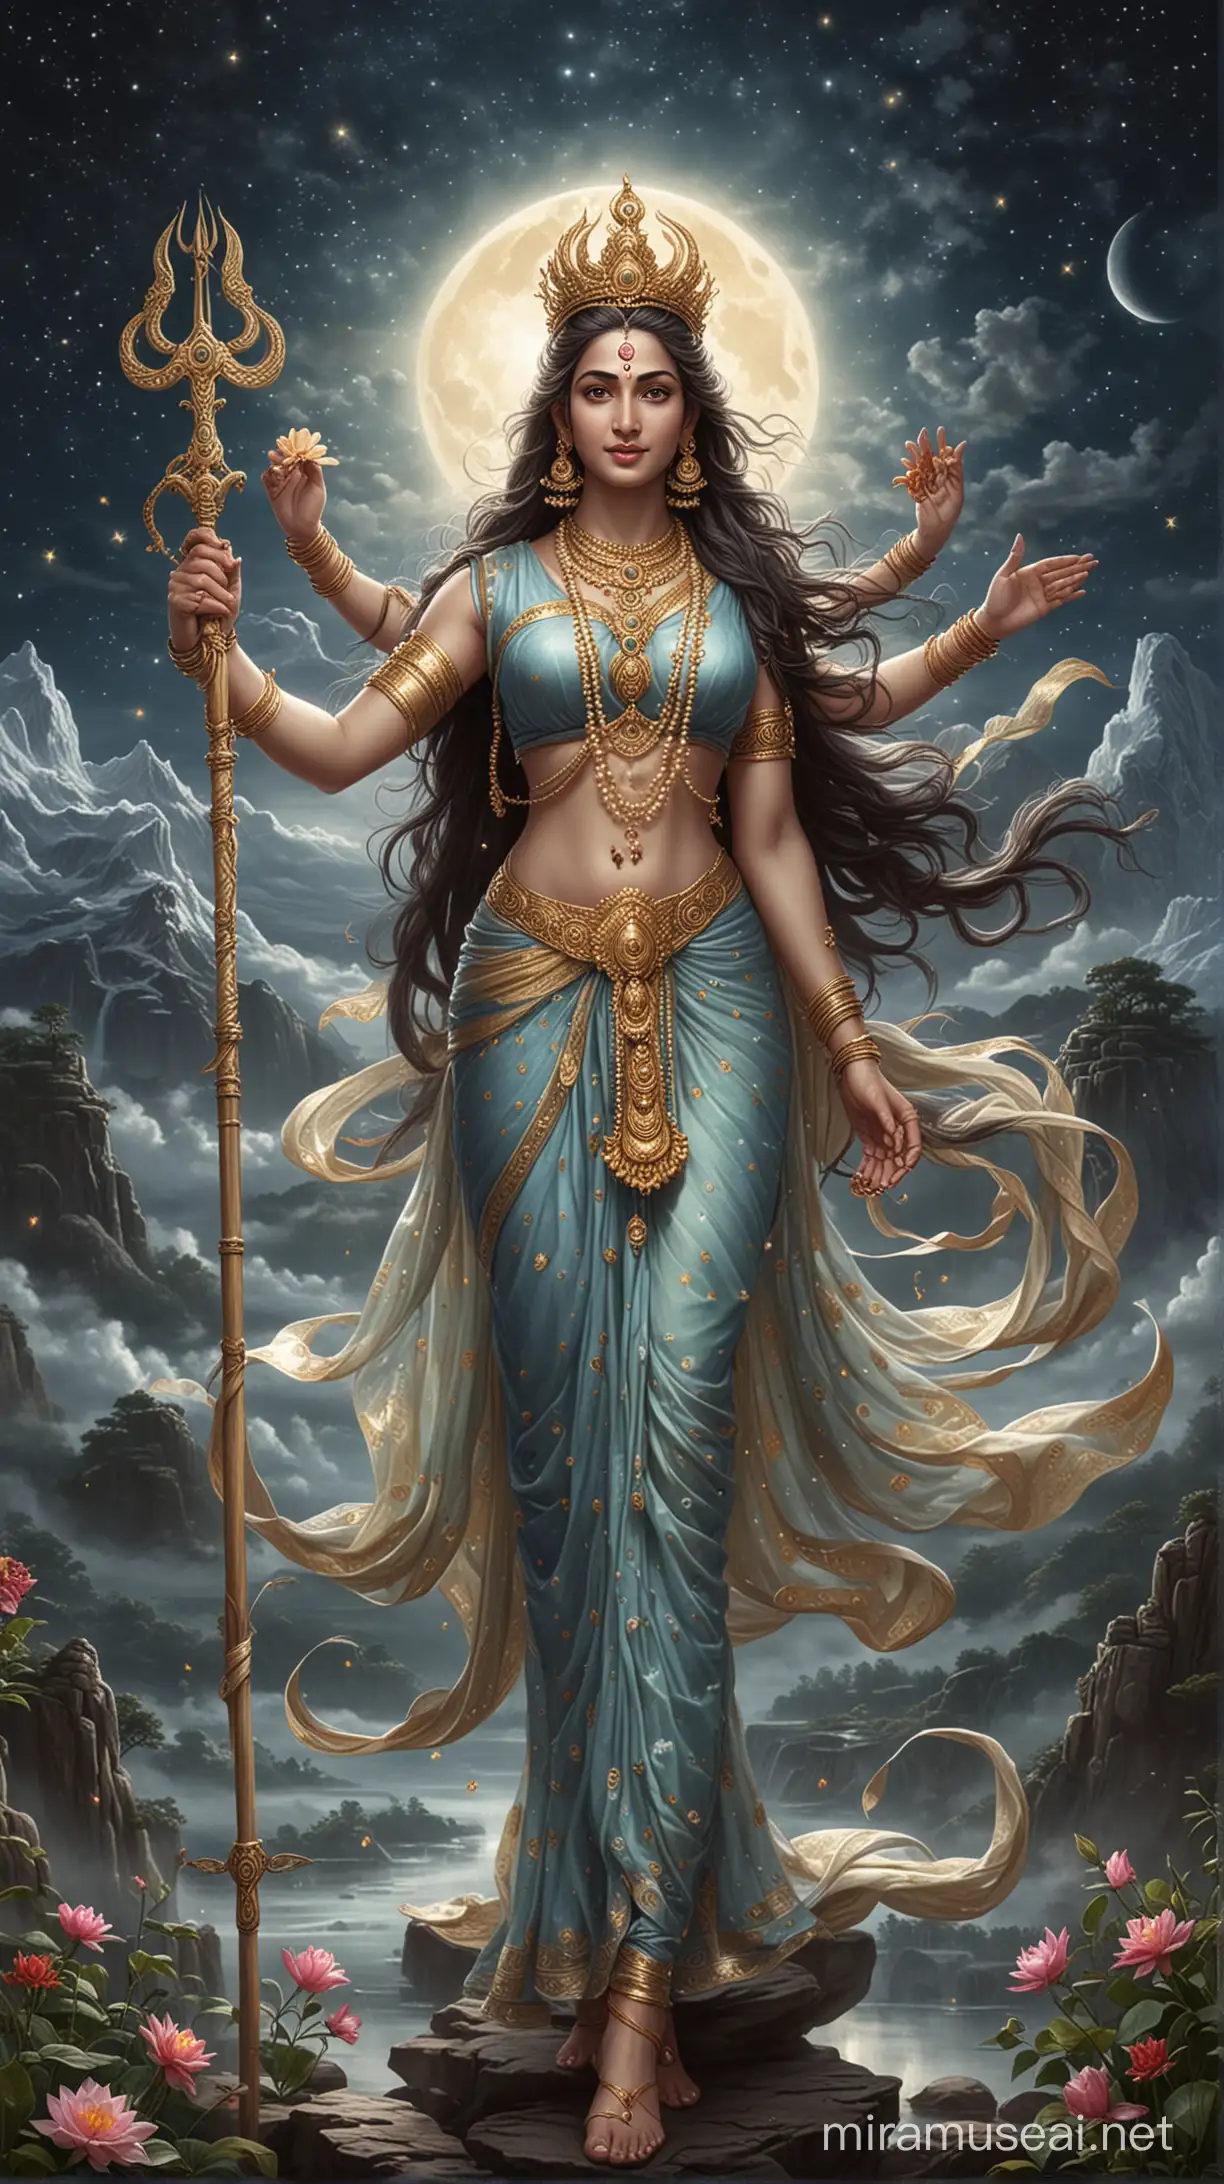 Divine Depiction Lord Shiva and Goddess Parvati in Celestial Splendor